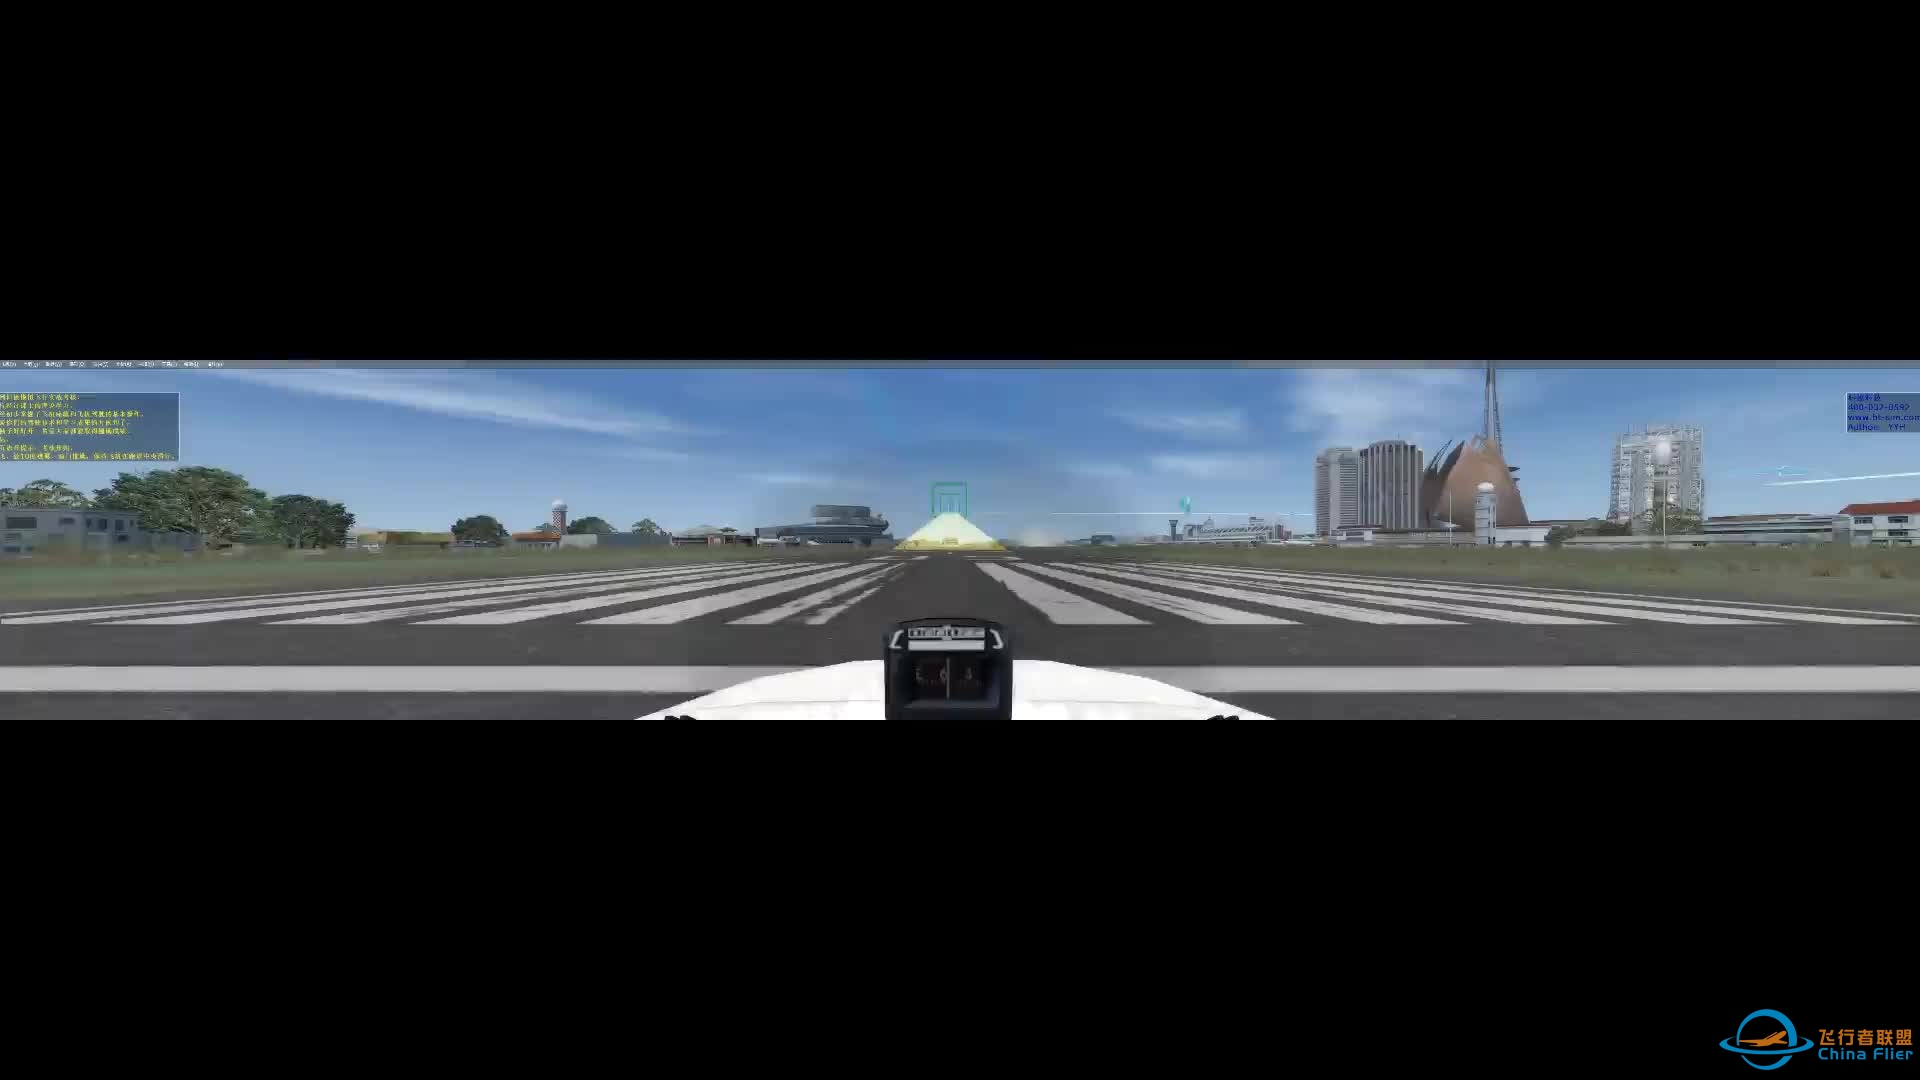 塞斯纳厦门机场五边飞行-科德模拟器-9332 